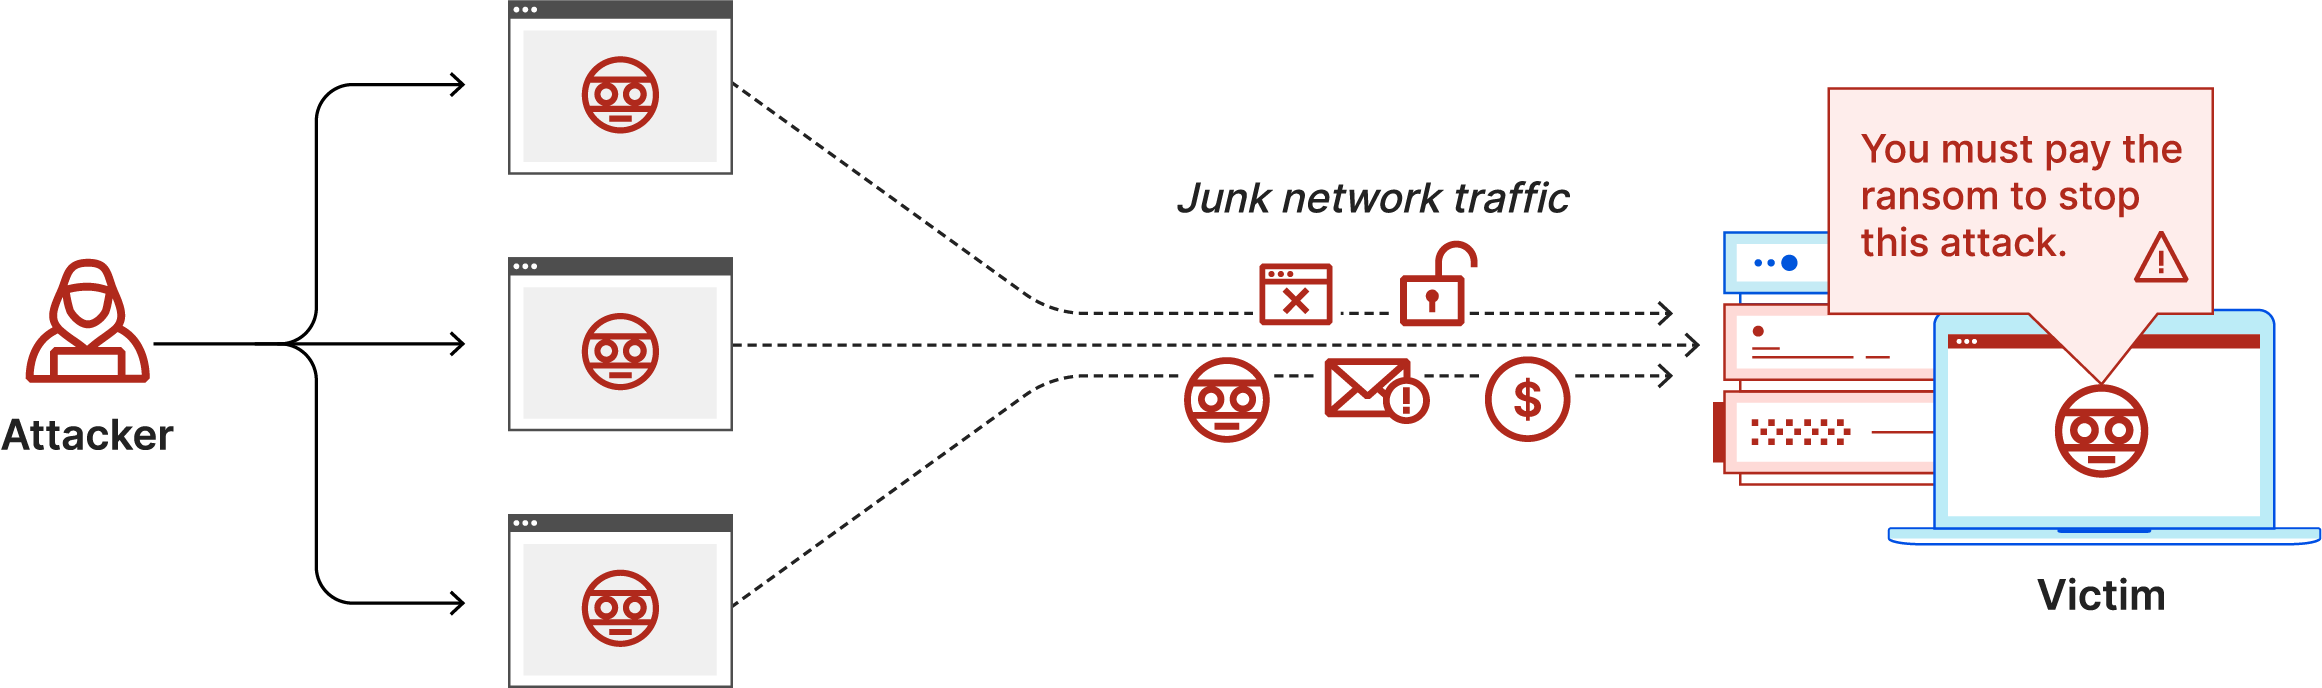 Diagrama de ataque DDoS com pedido de resgate: o invasor envia tráfego de rede indesejado e nota com pedido de resgate para a vítima